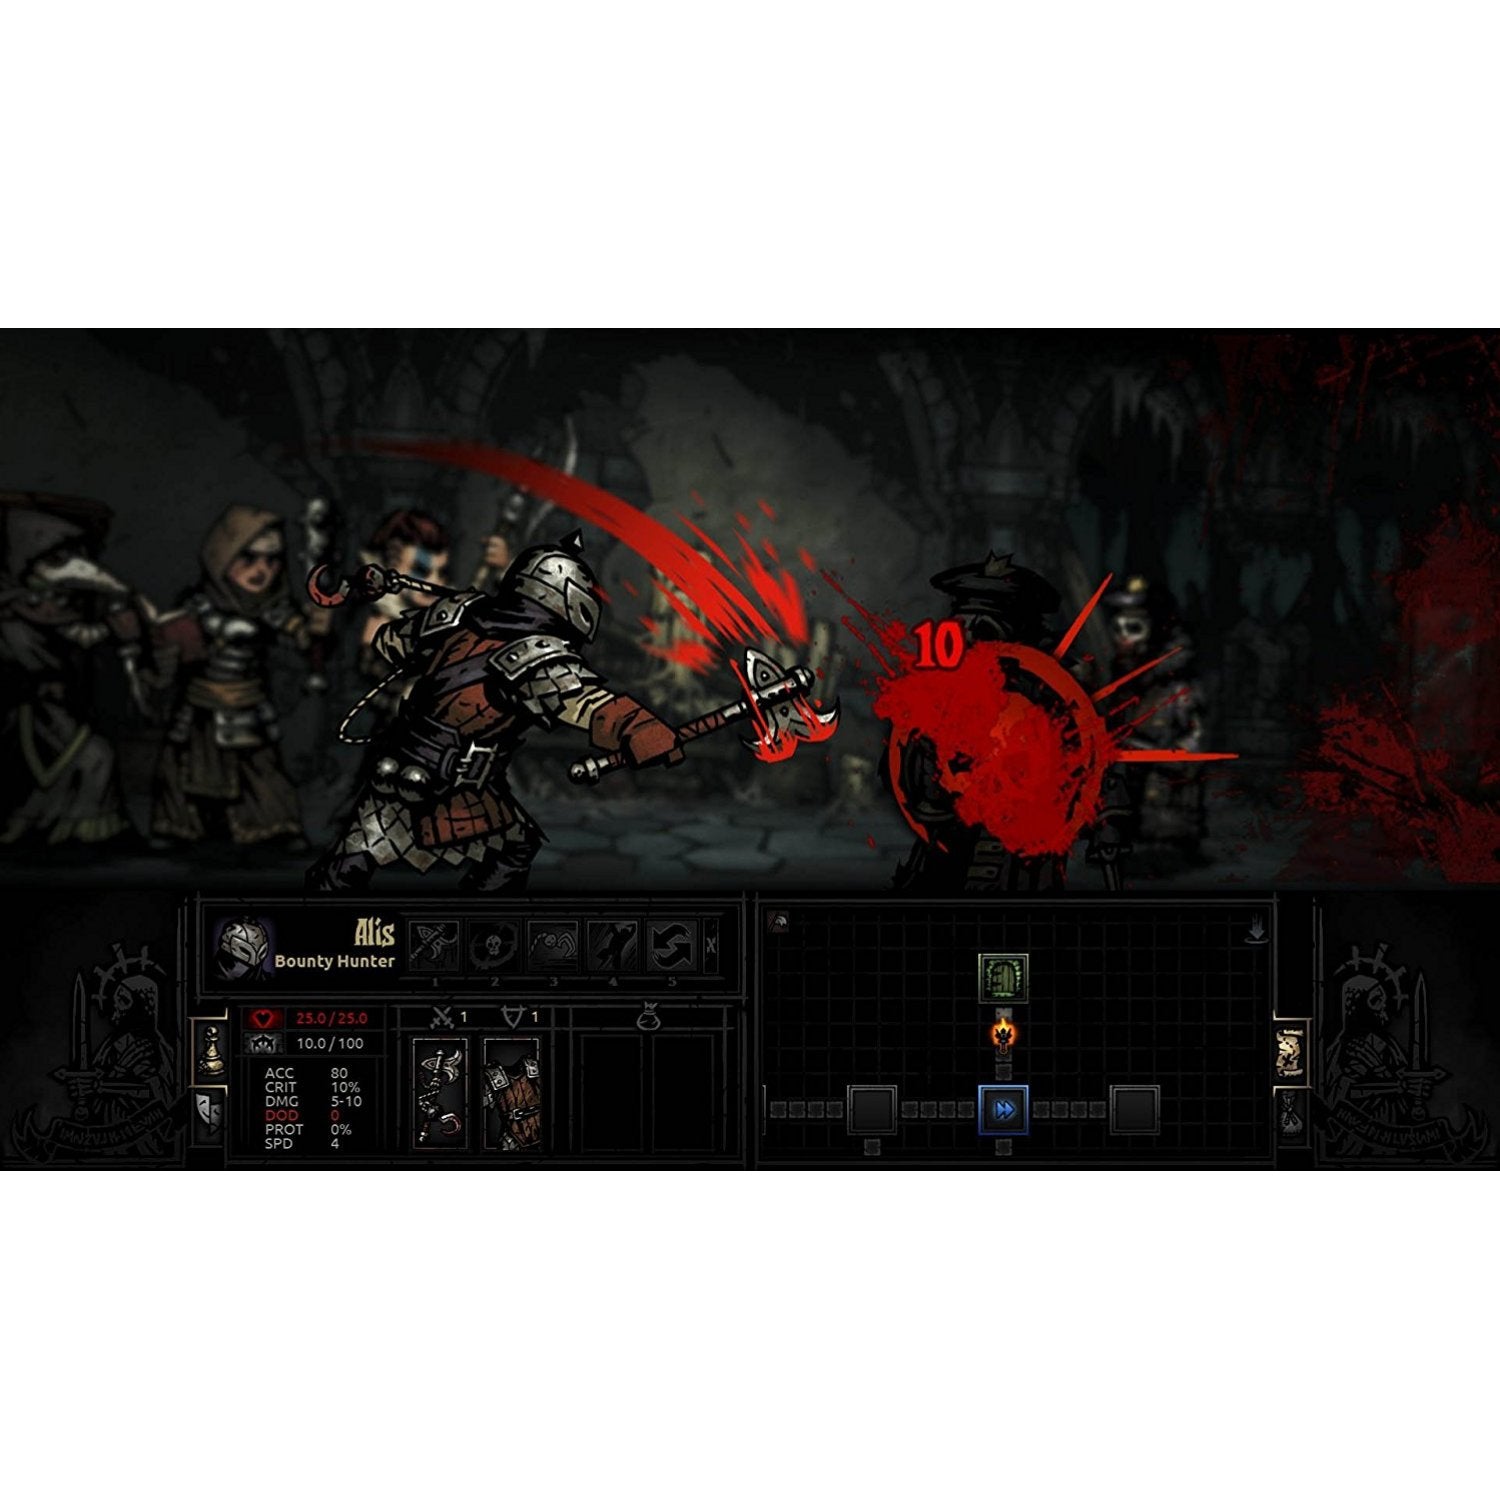 darkest dungeon ps4 review